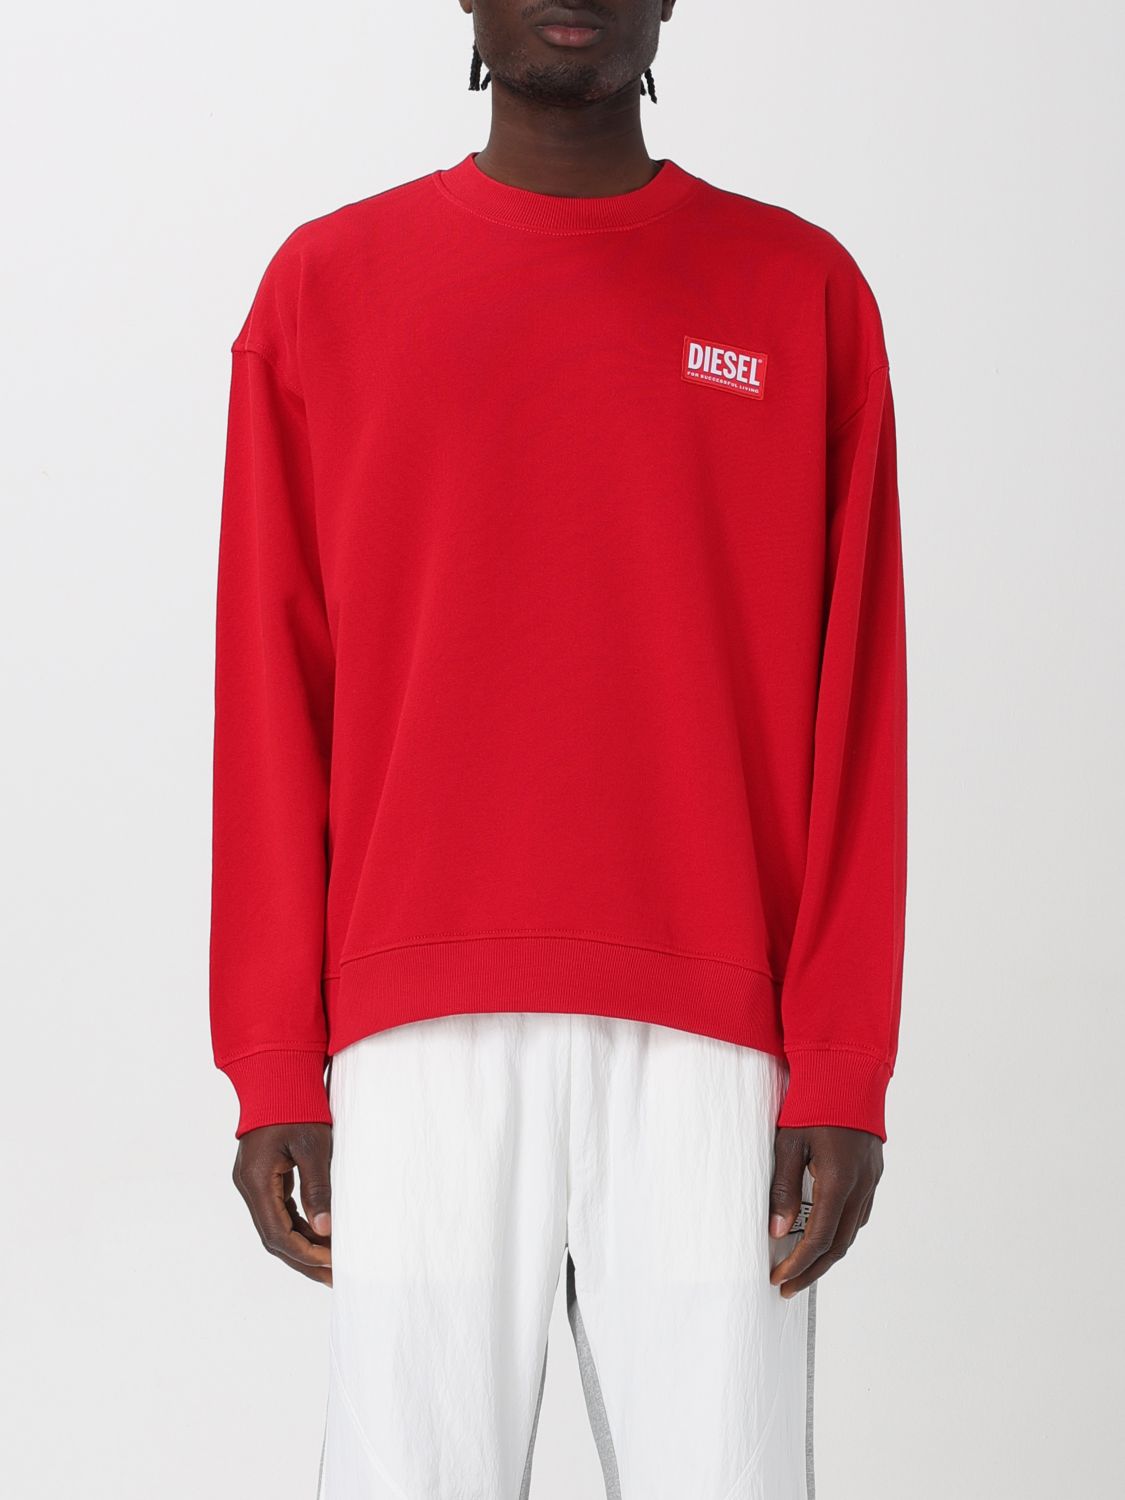 Diesel Sweatshirt DIESEL Men colour Red